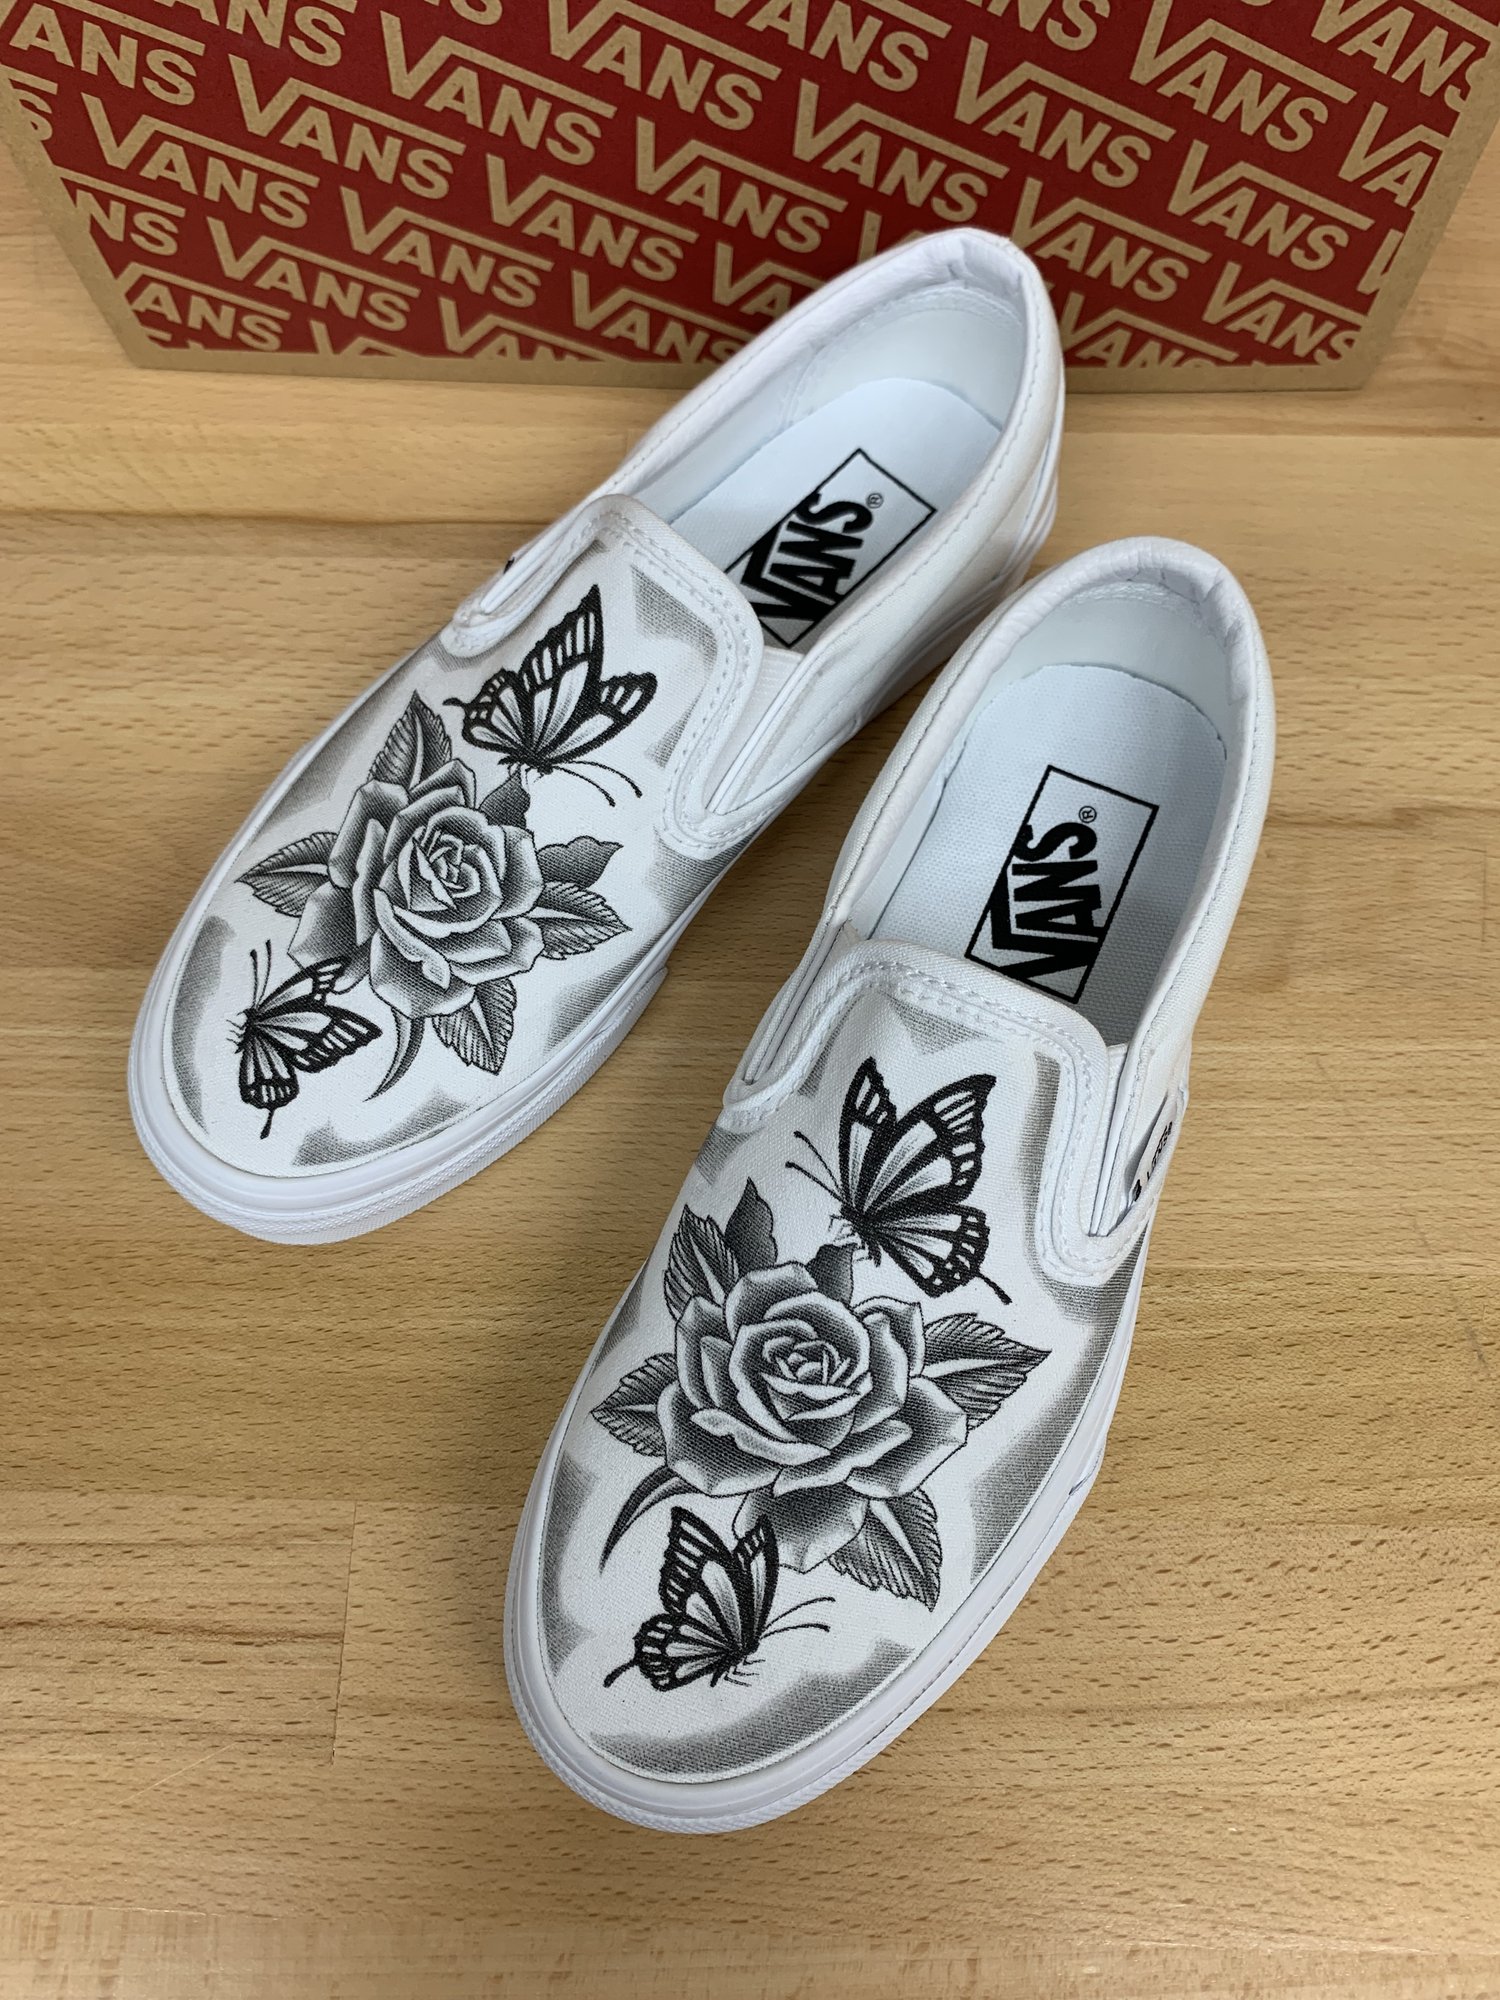 Custom Vans Slide Ons - Butterfly Rose Design (Hand Drawn) — RIVAL